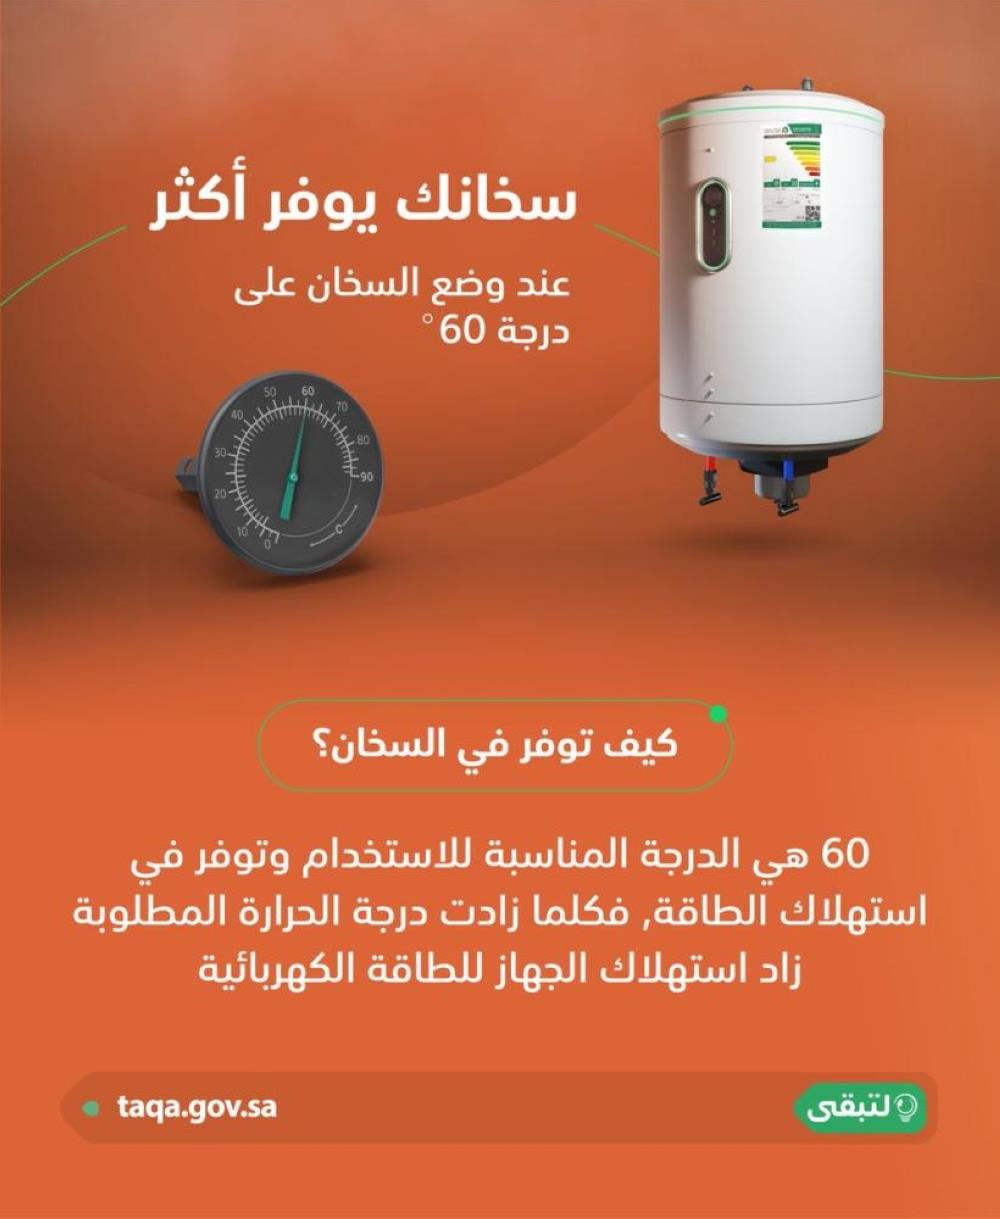 السعودية - أساليب تخفيض الكهرباء عبر مجففات الملابس والسخانات الكهربائية